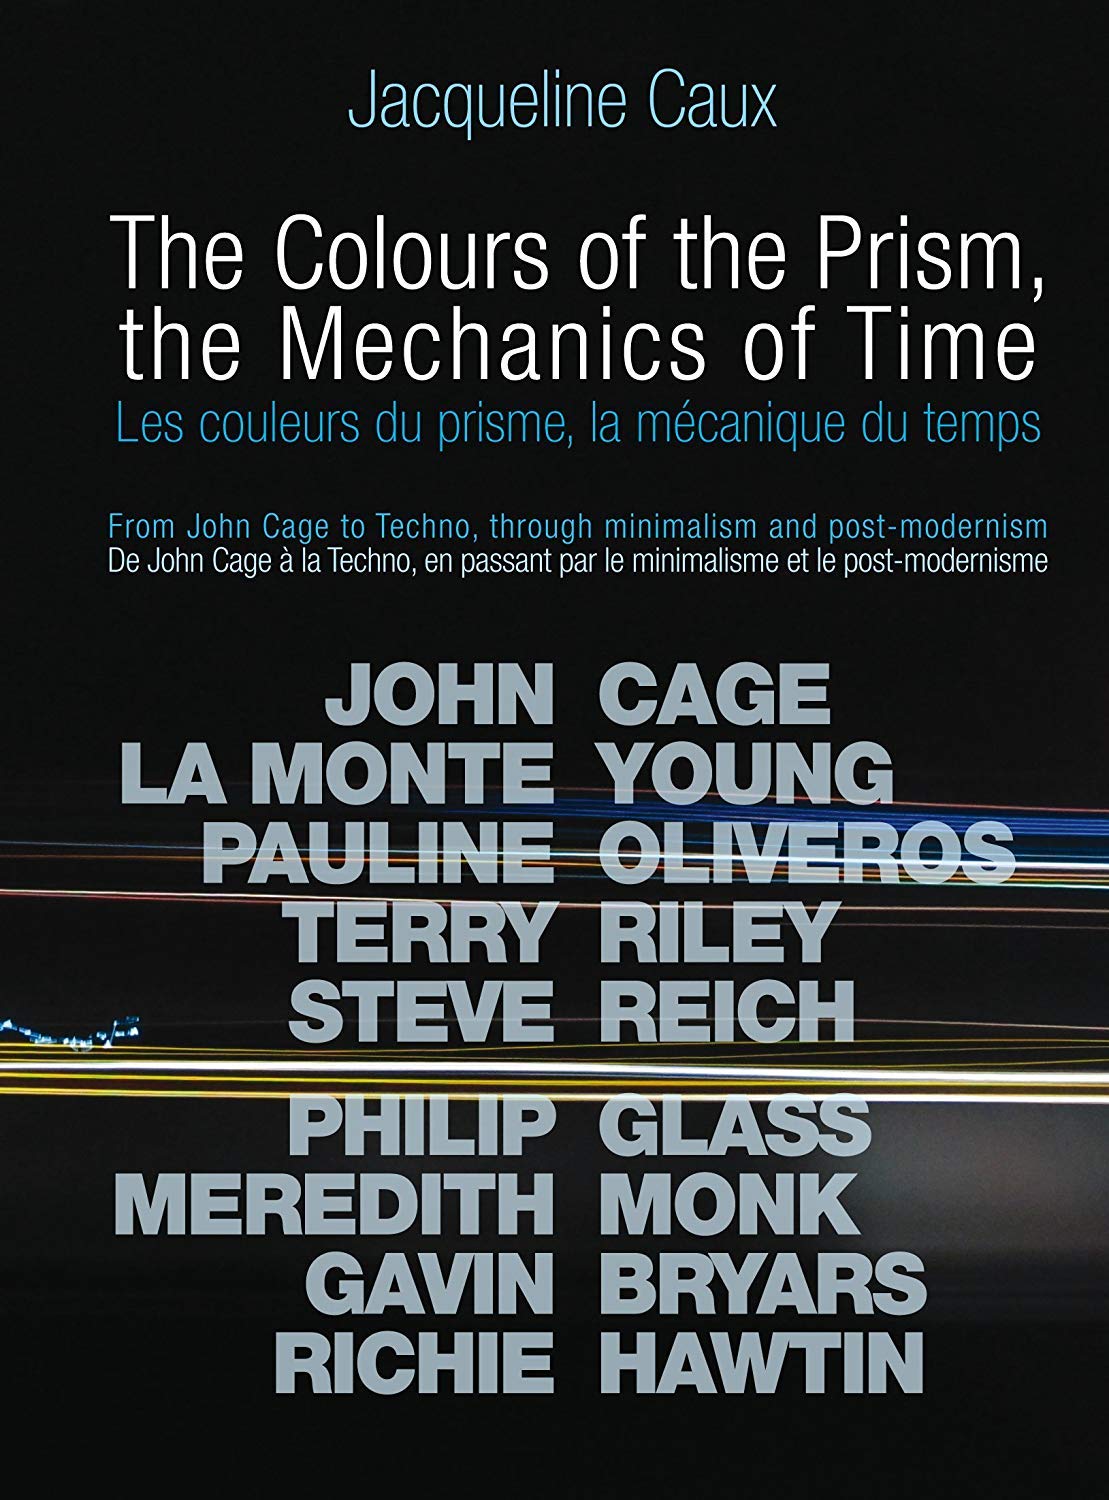 The Colours of the Prism - Jacqueline Caux - Le lieu documentaire